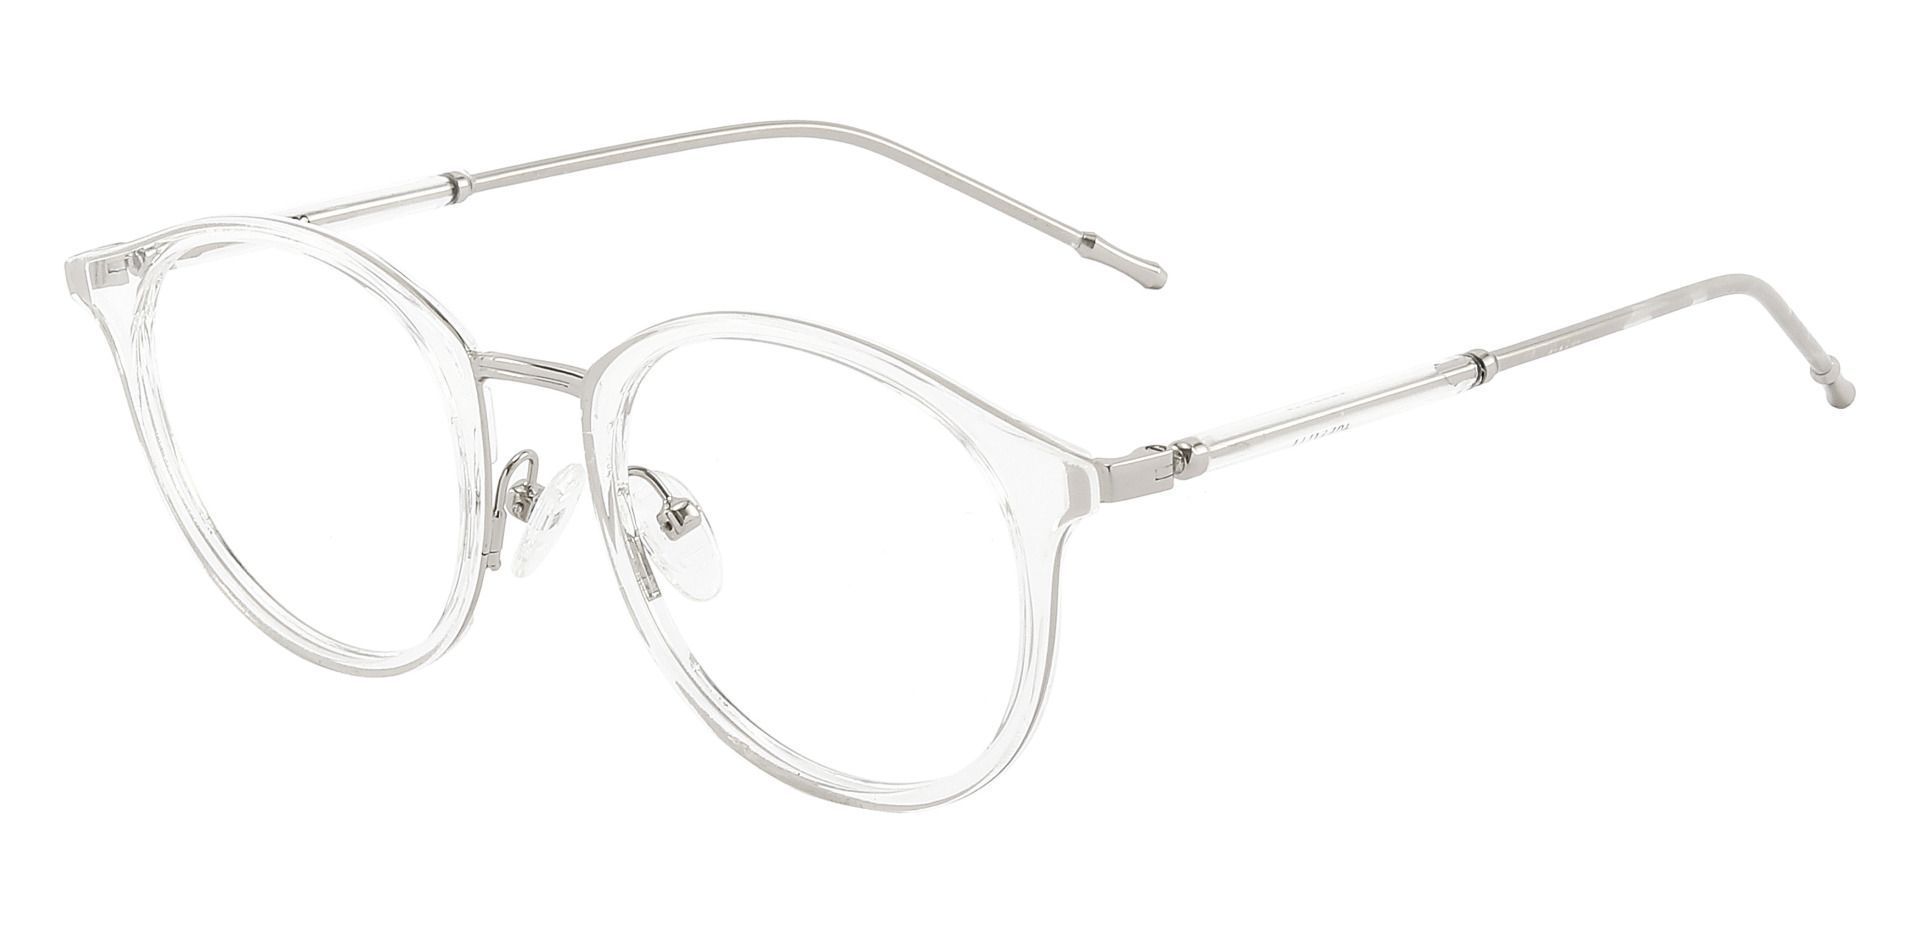 Ellsinore Oval Prescription Glasses - Clear